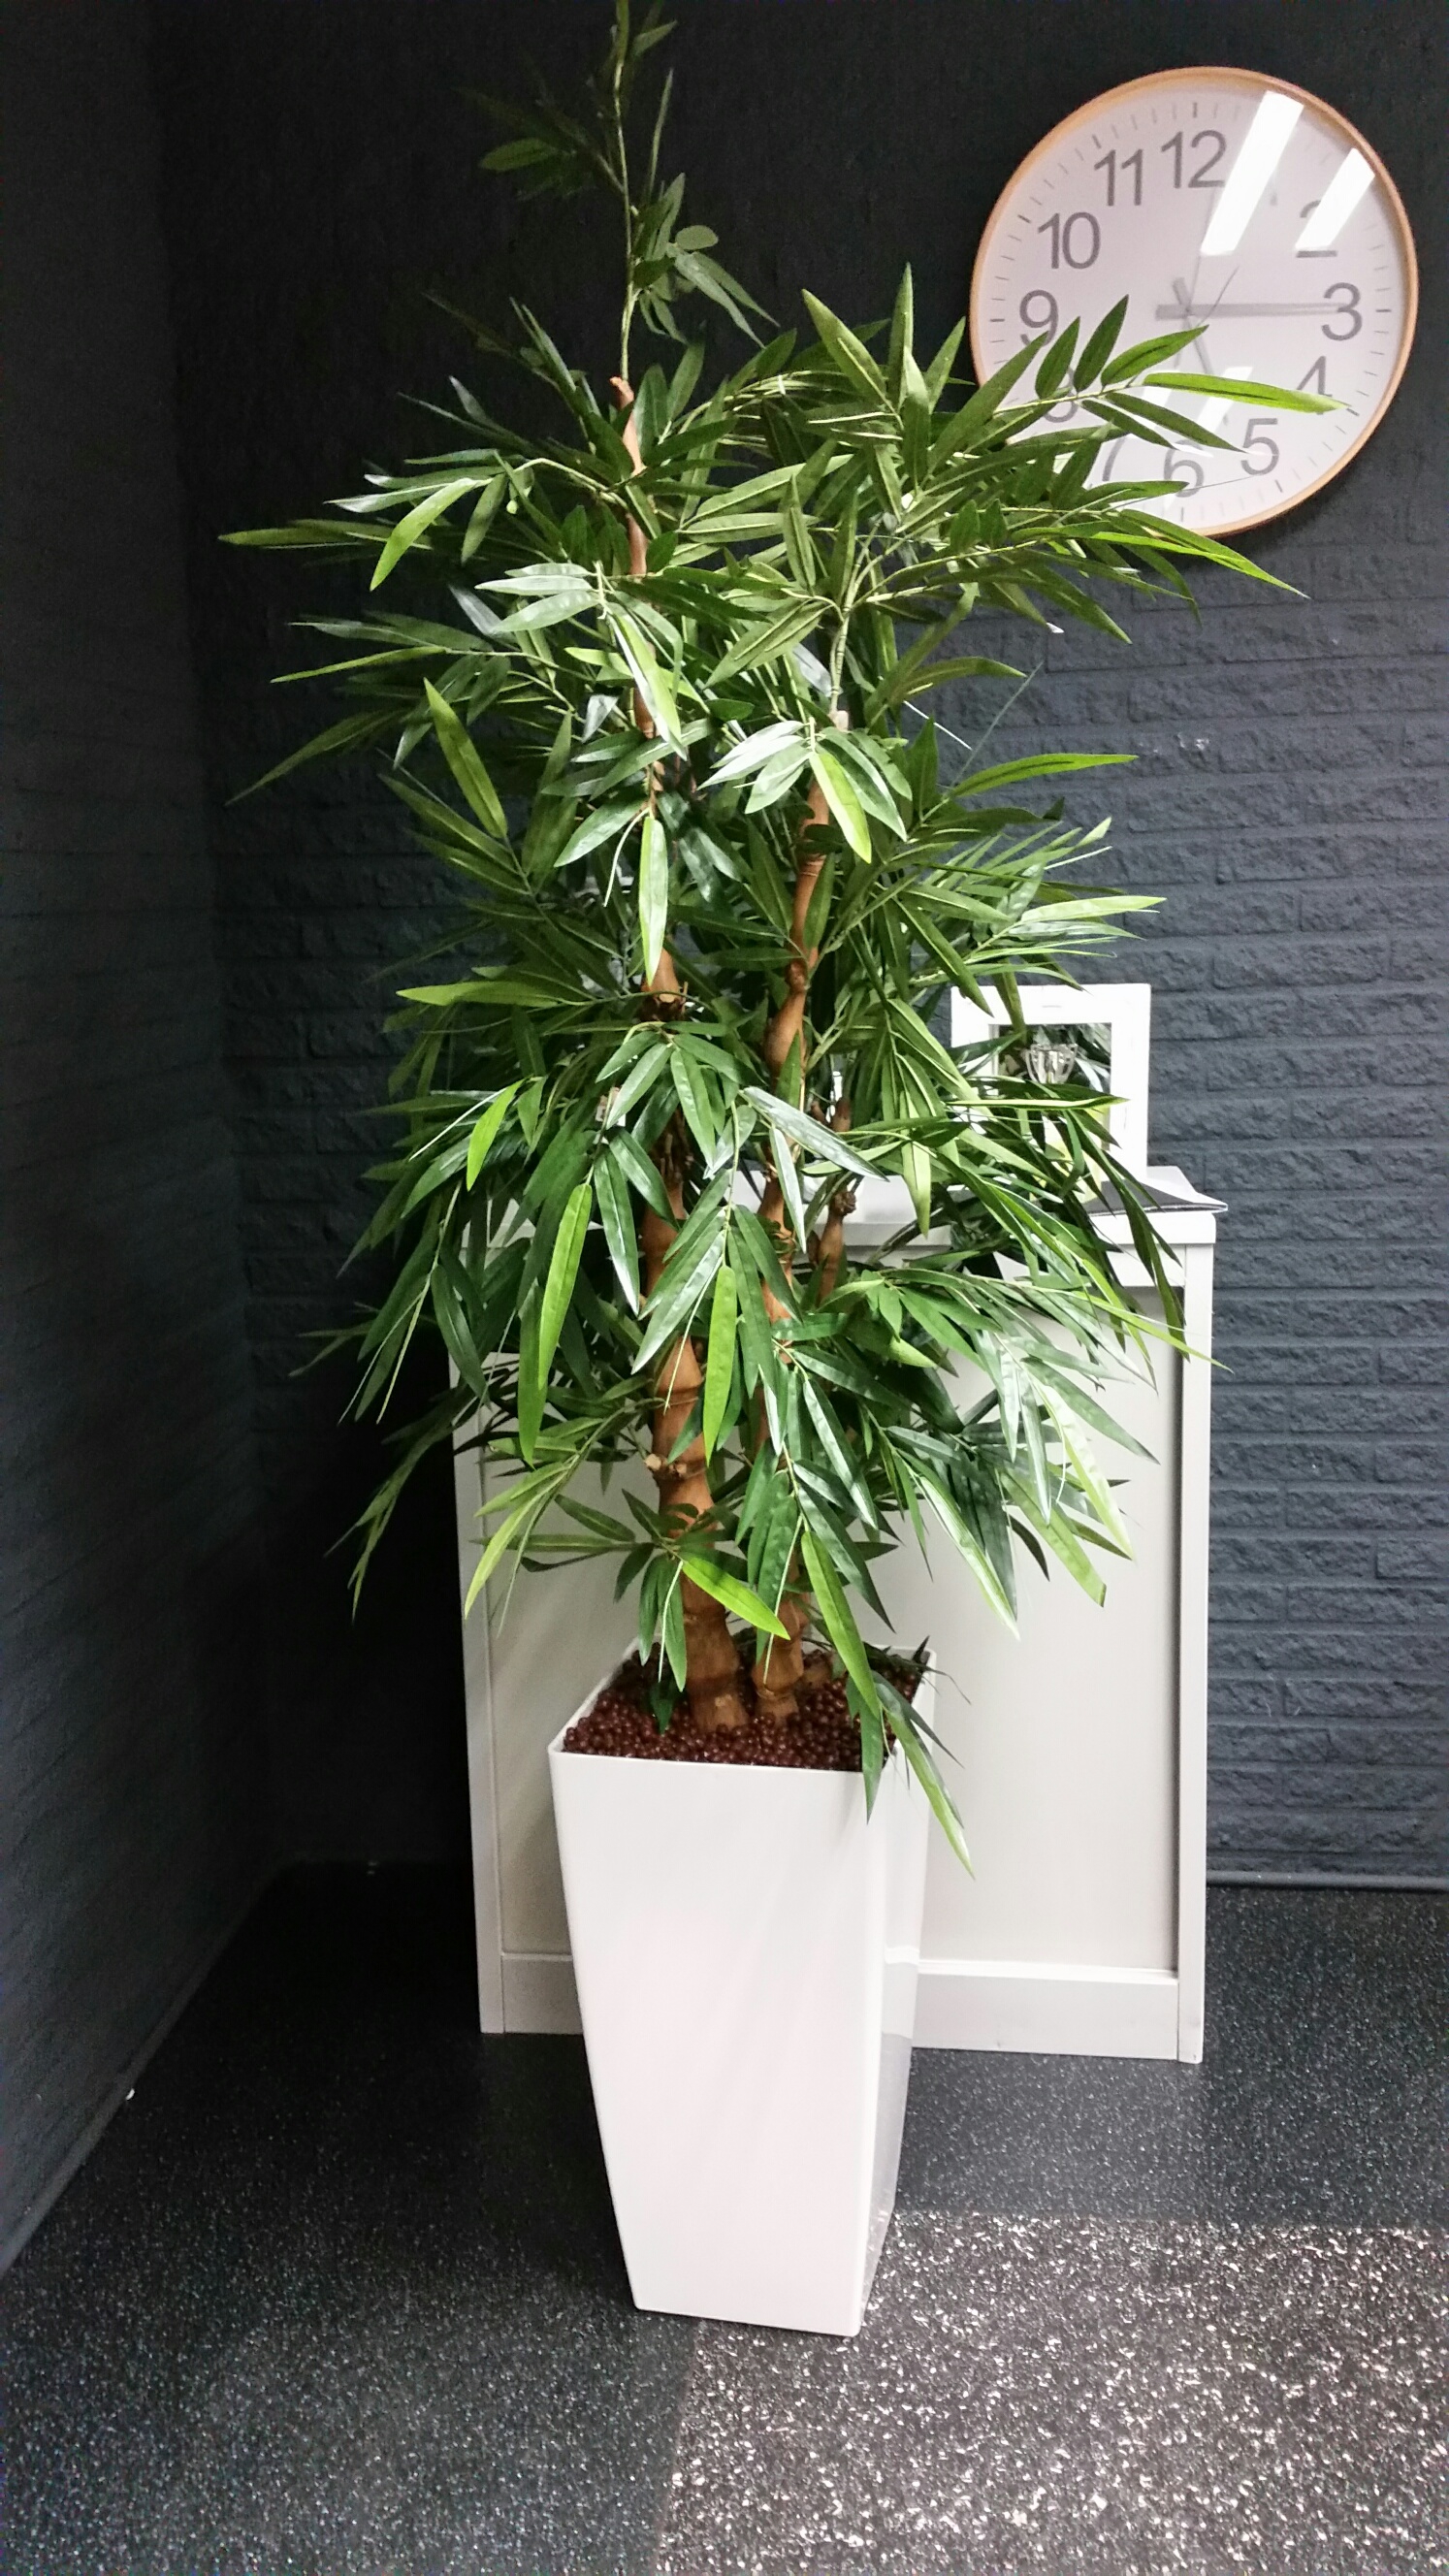 Bamboeplant de Luxe in witte pot 210 cm hoog